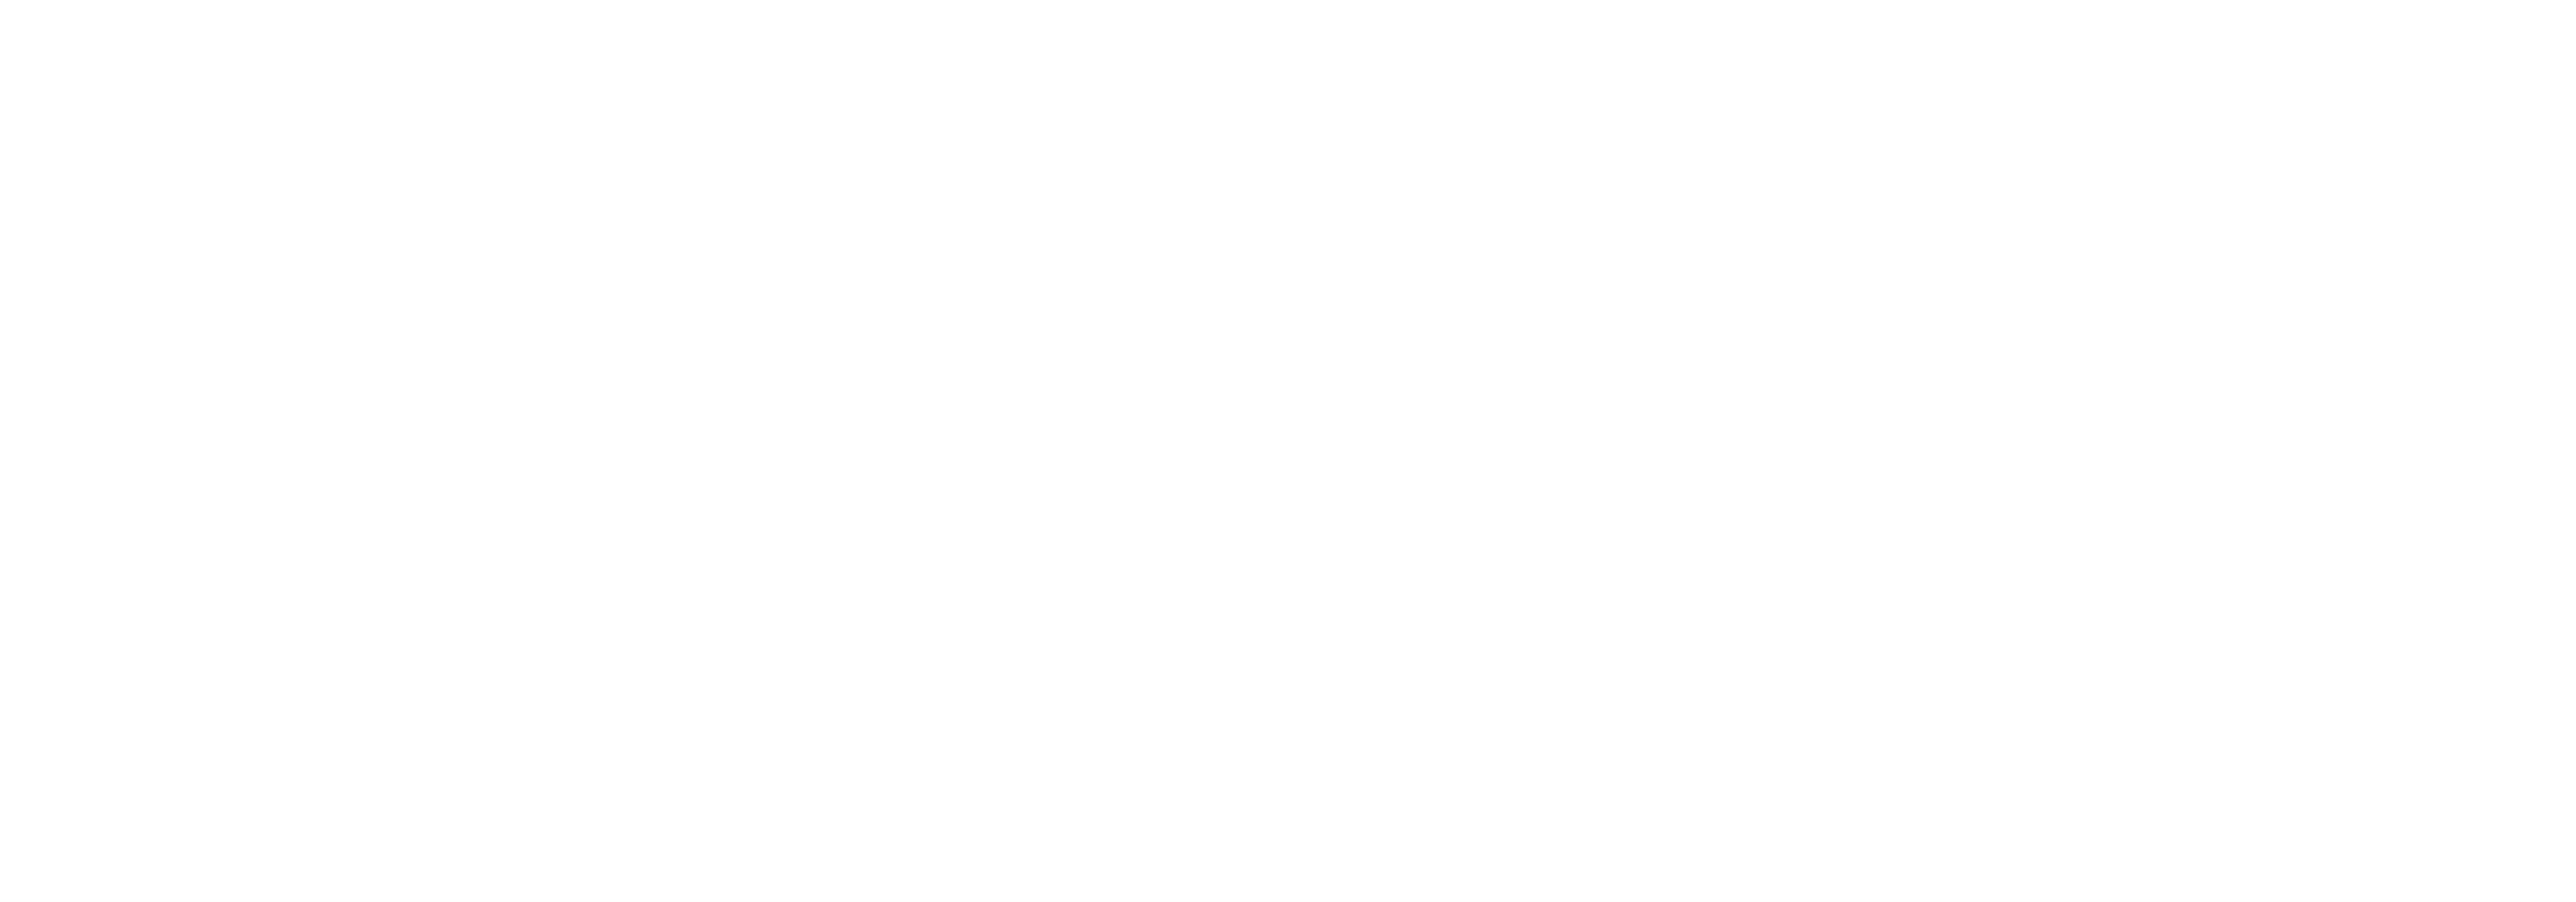 UXPA 2024 International Conference